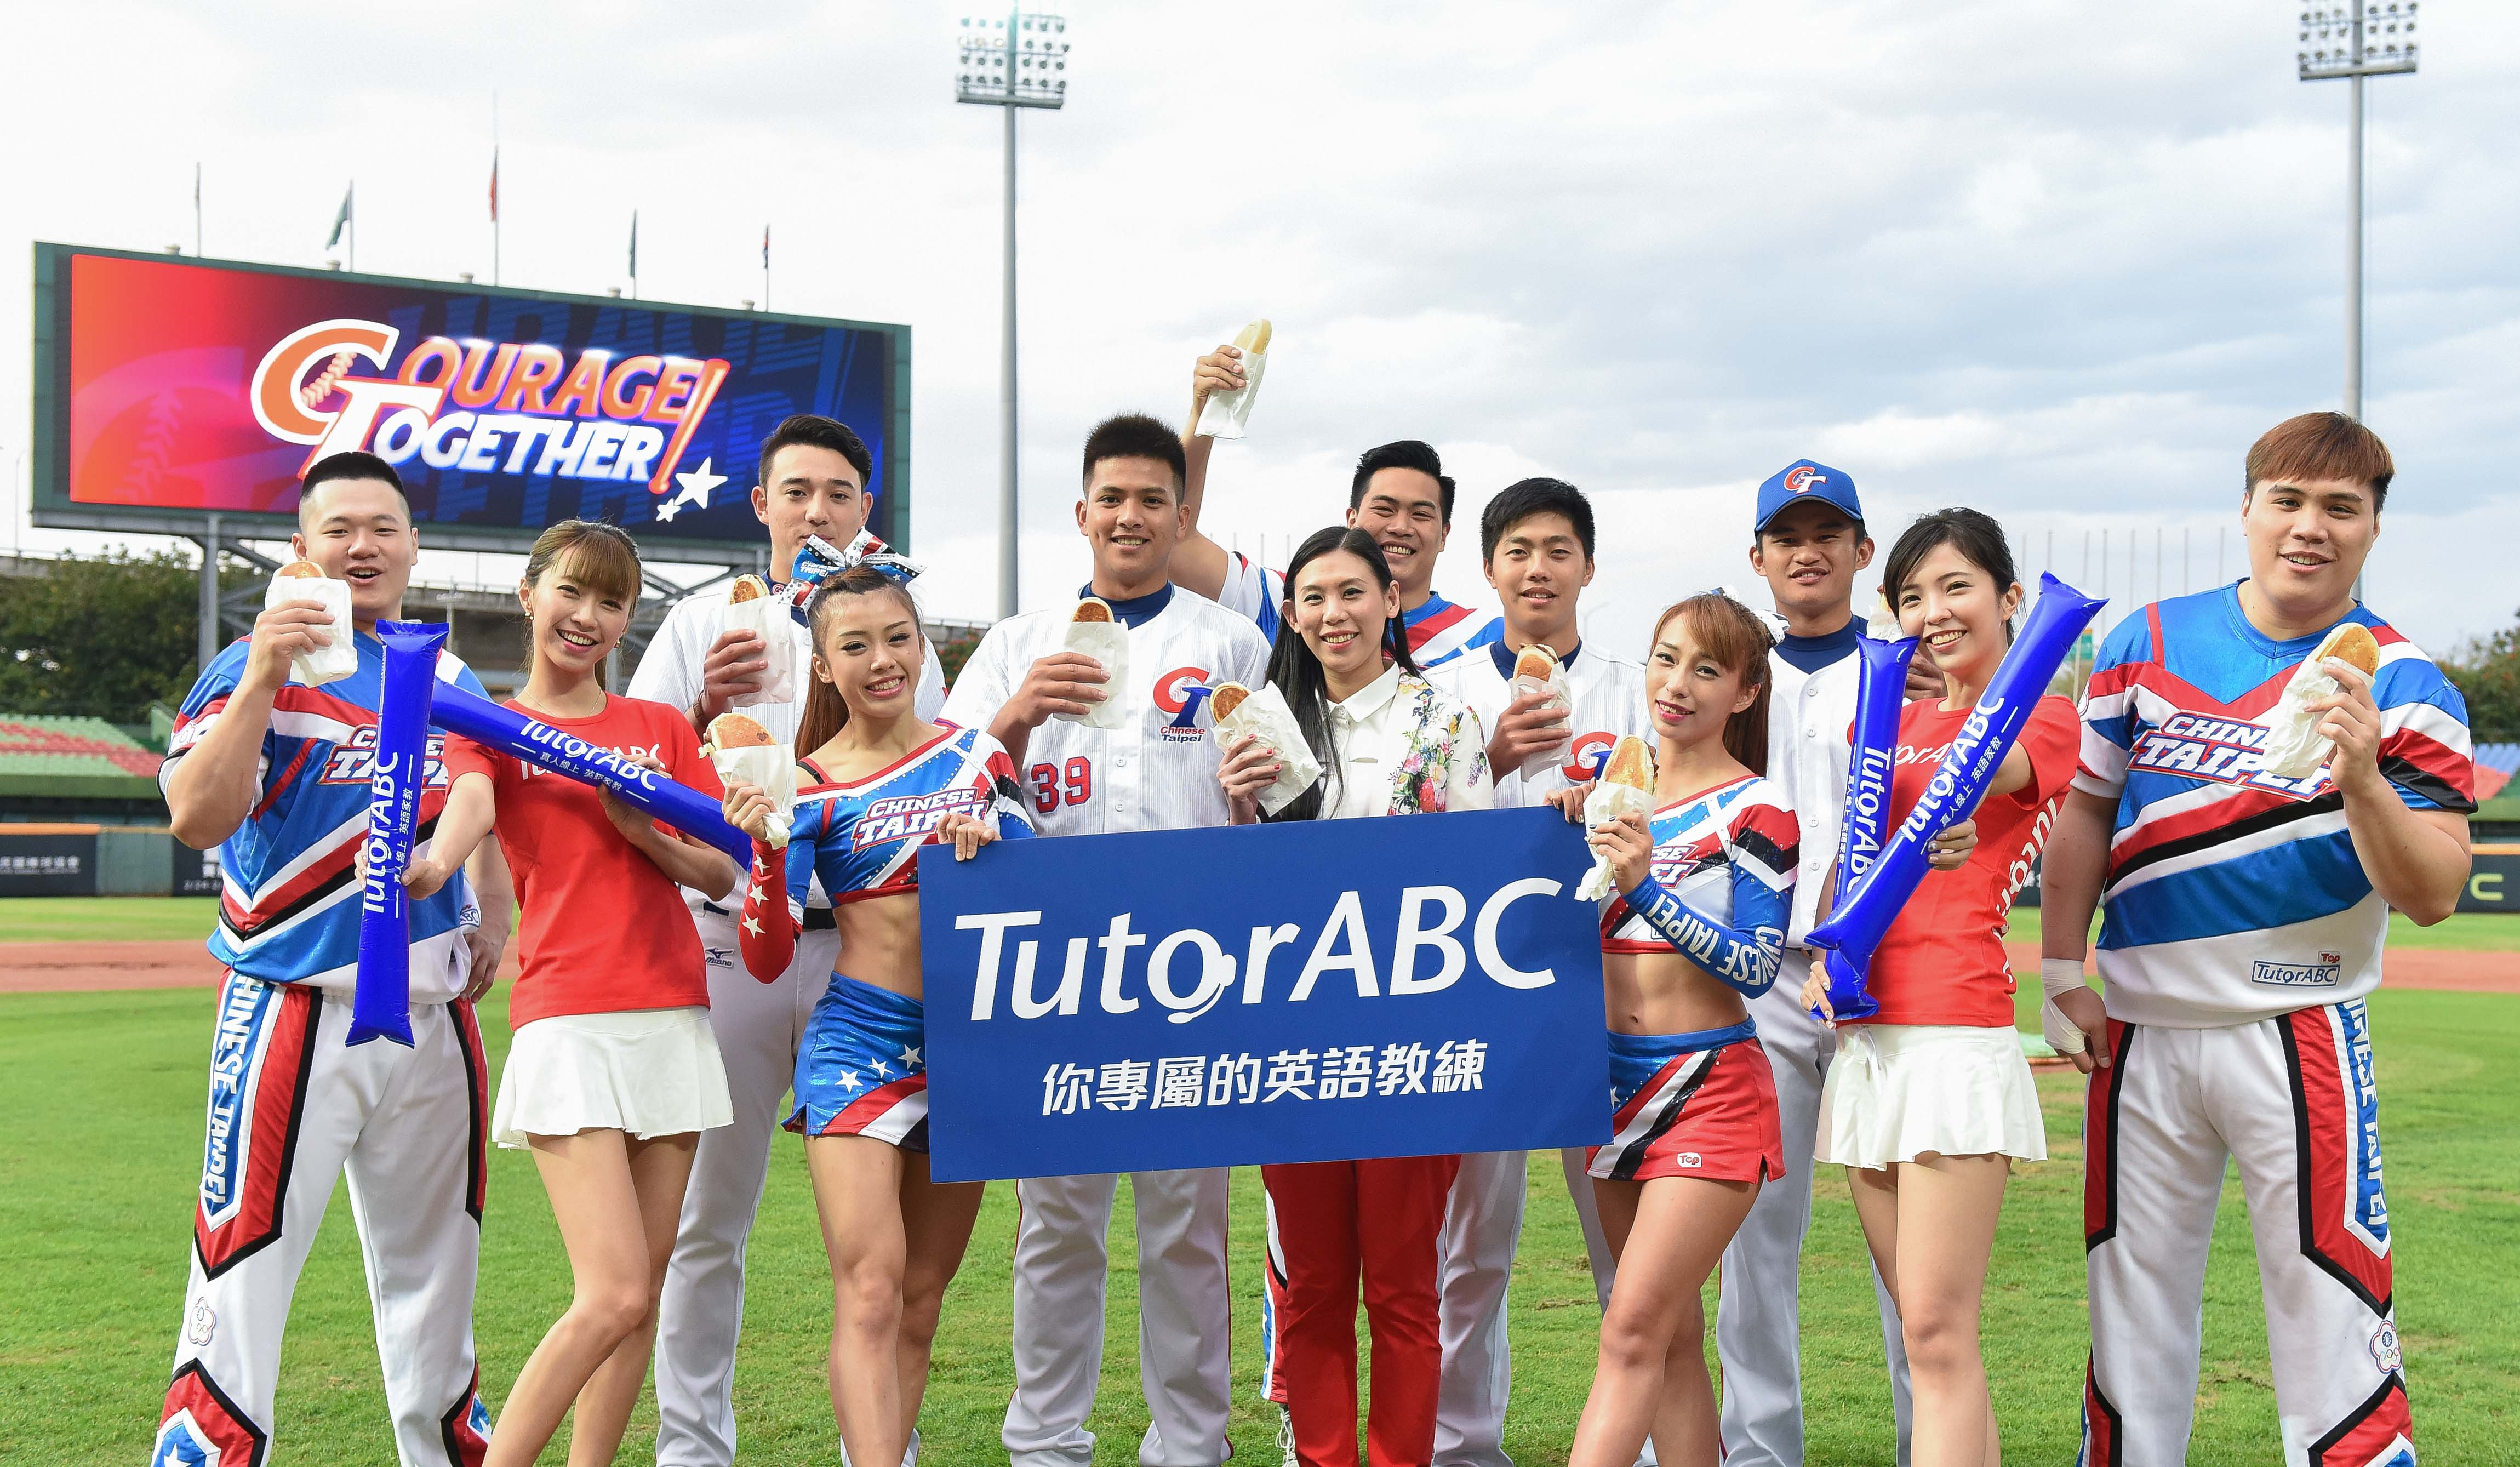 中華隊最強後盾 TutorABC邀請啦啦隊極限開球 台灣啦啦隊超「高」難度開球 大平台翻轉空拋開球 現場驚呼連連